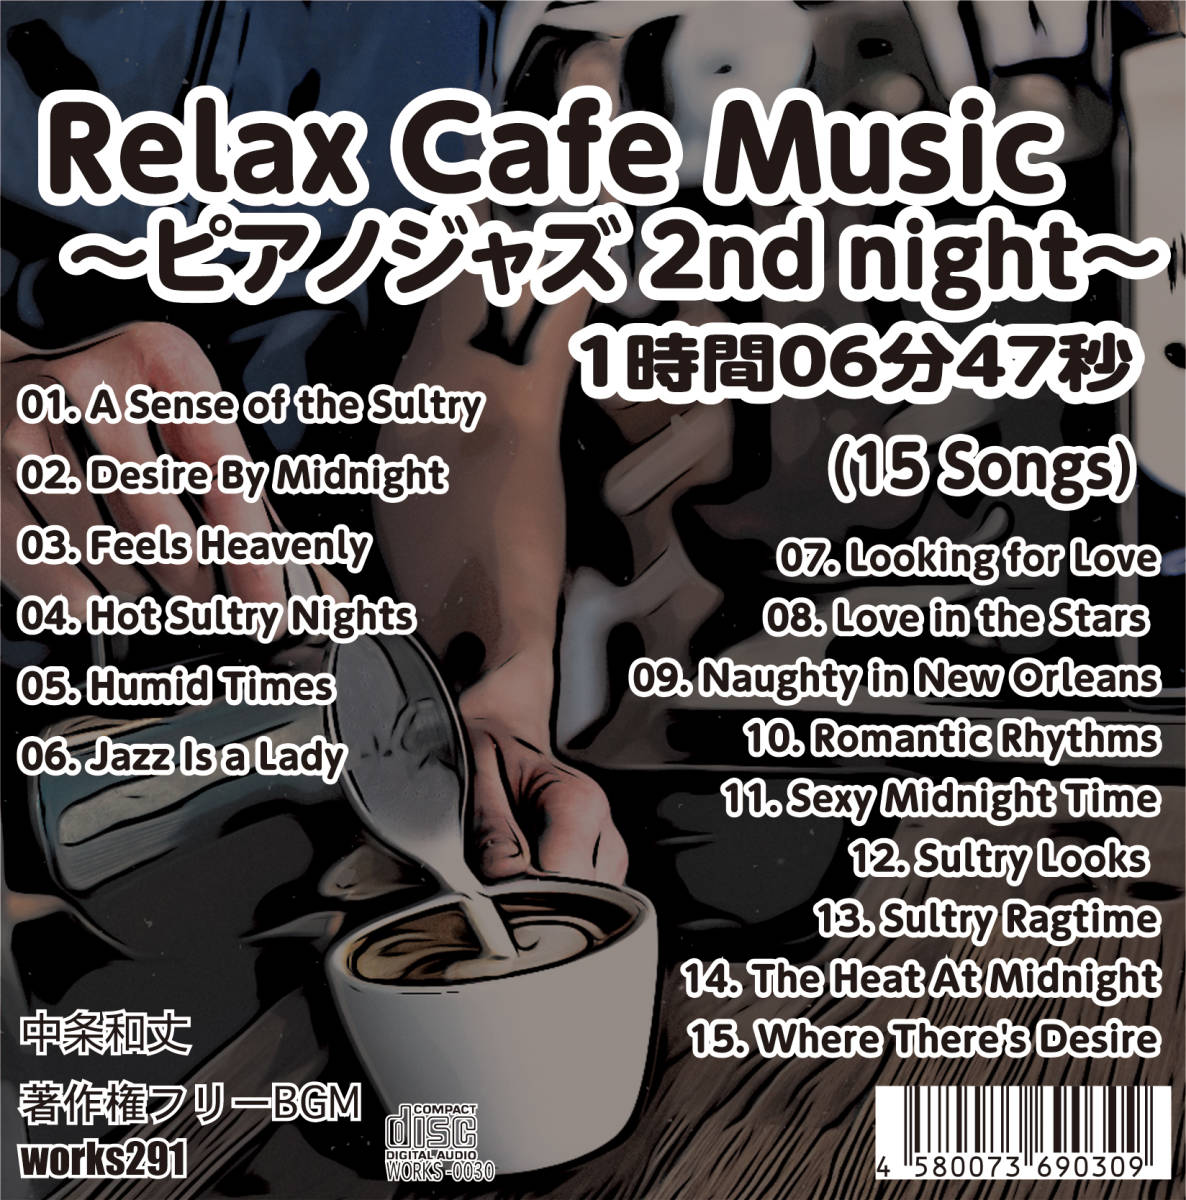 【フリーBGM】【ピアノジャズバラード】Relax Cafe Music~ピアノジャズ 2nd night~【 癒しの音楽 】_画像1